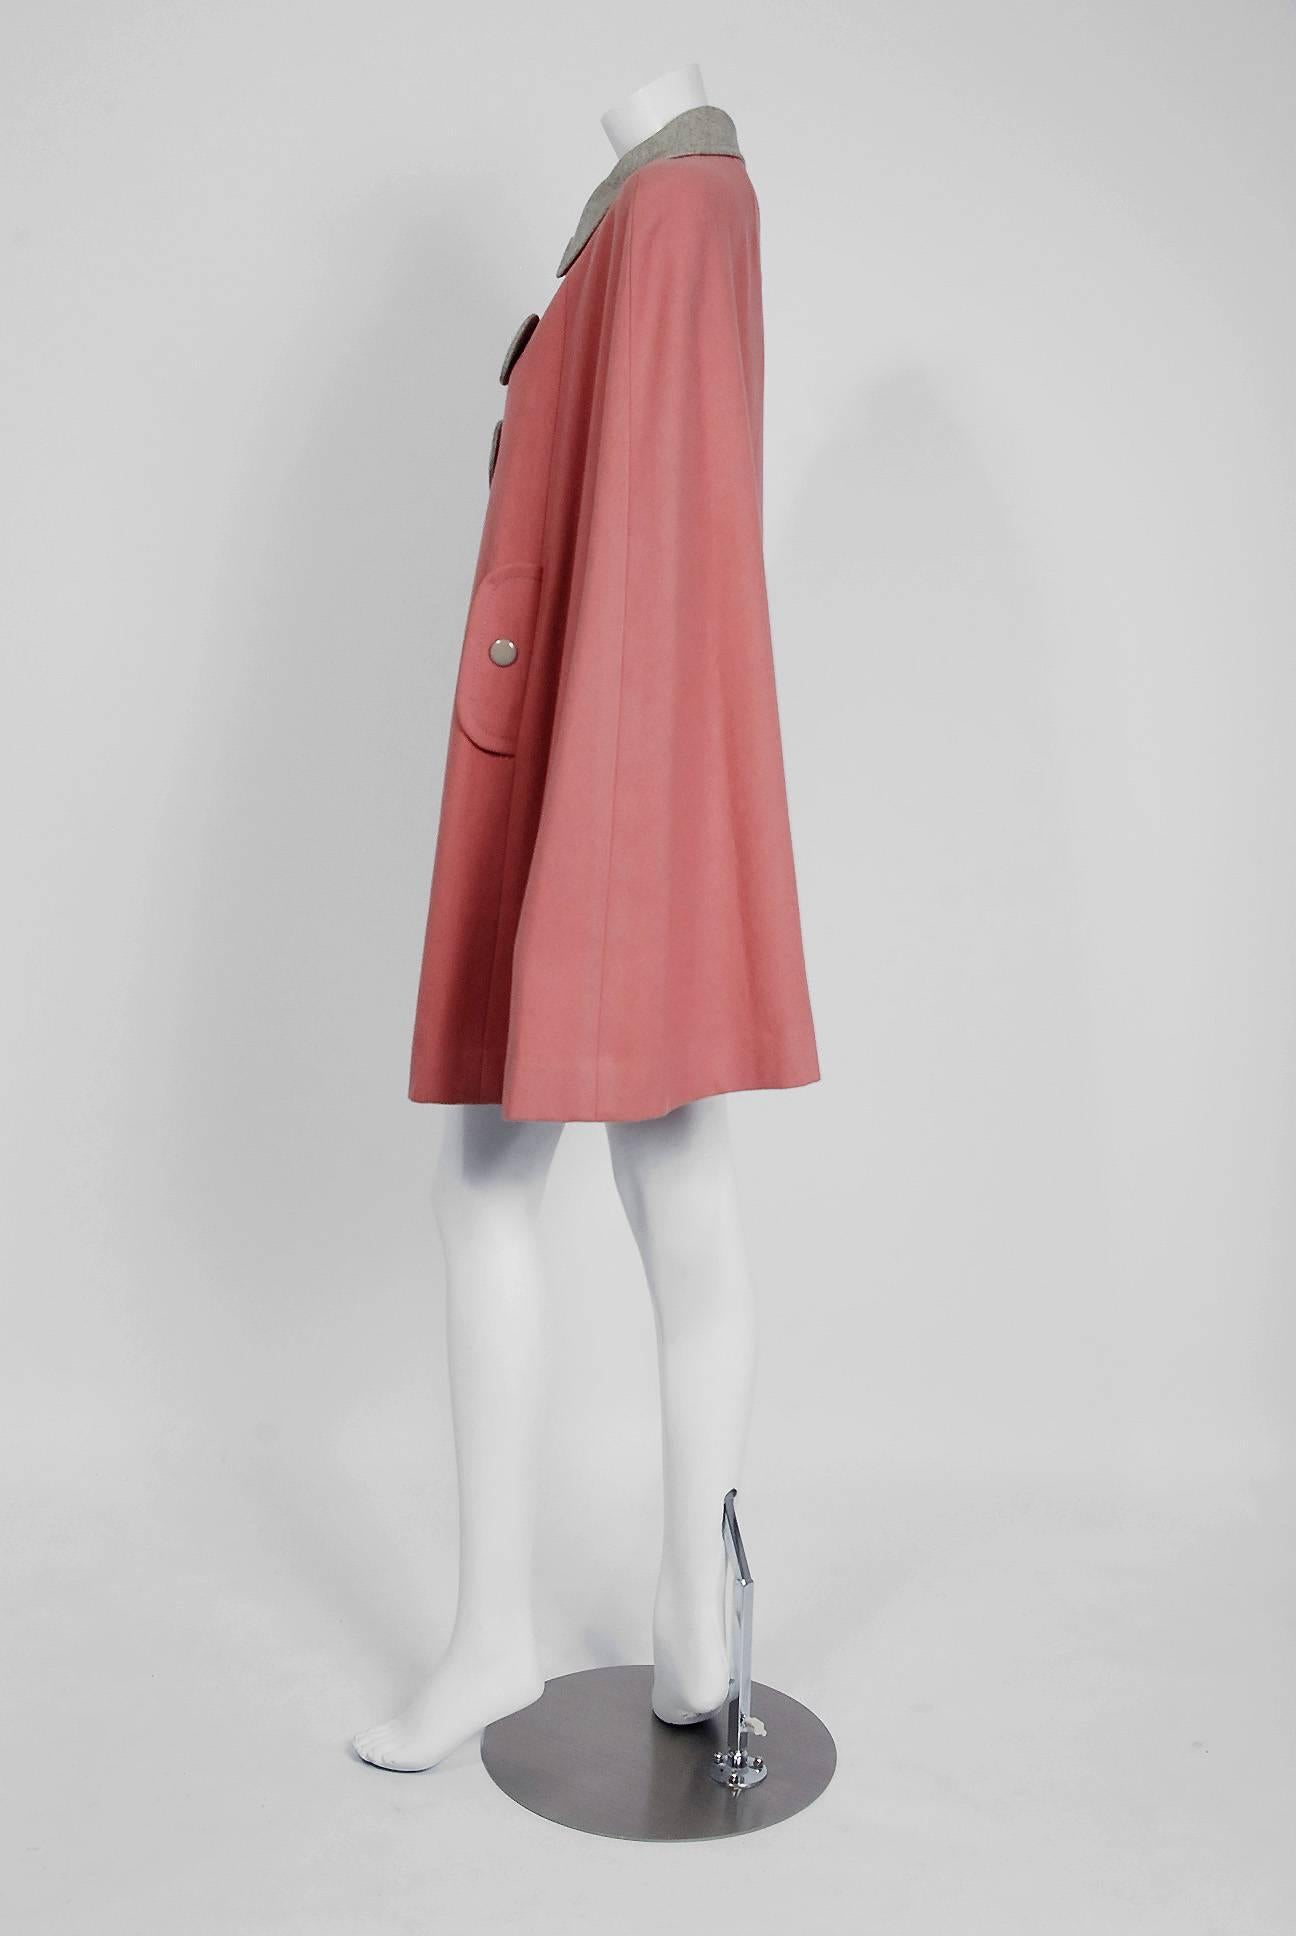 1972 Pierre Cardin Paris Mauve-Pink & Gray Block Color Wool Space Age Mod Cape  2